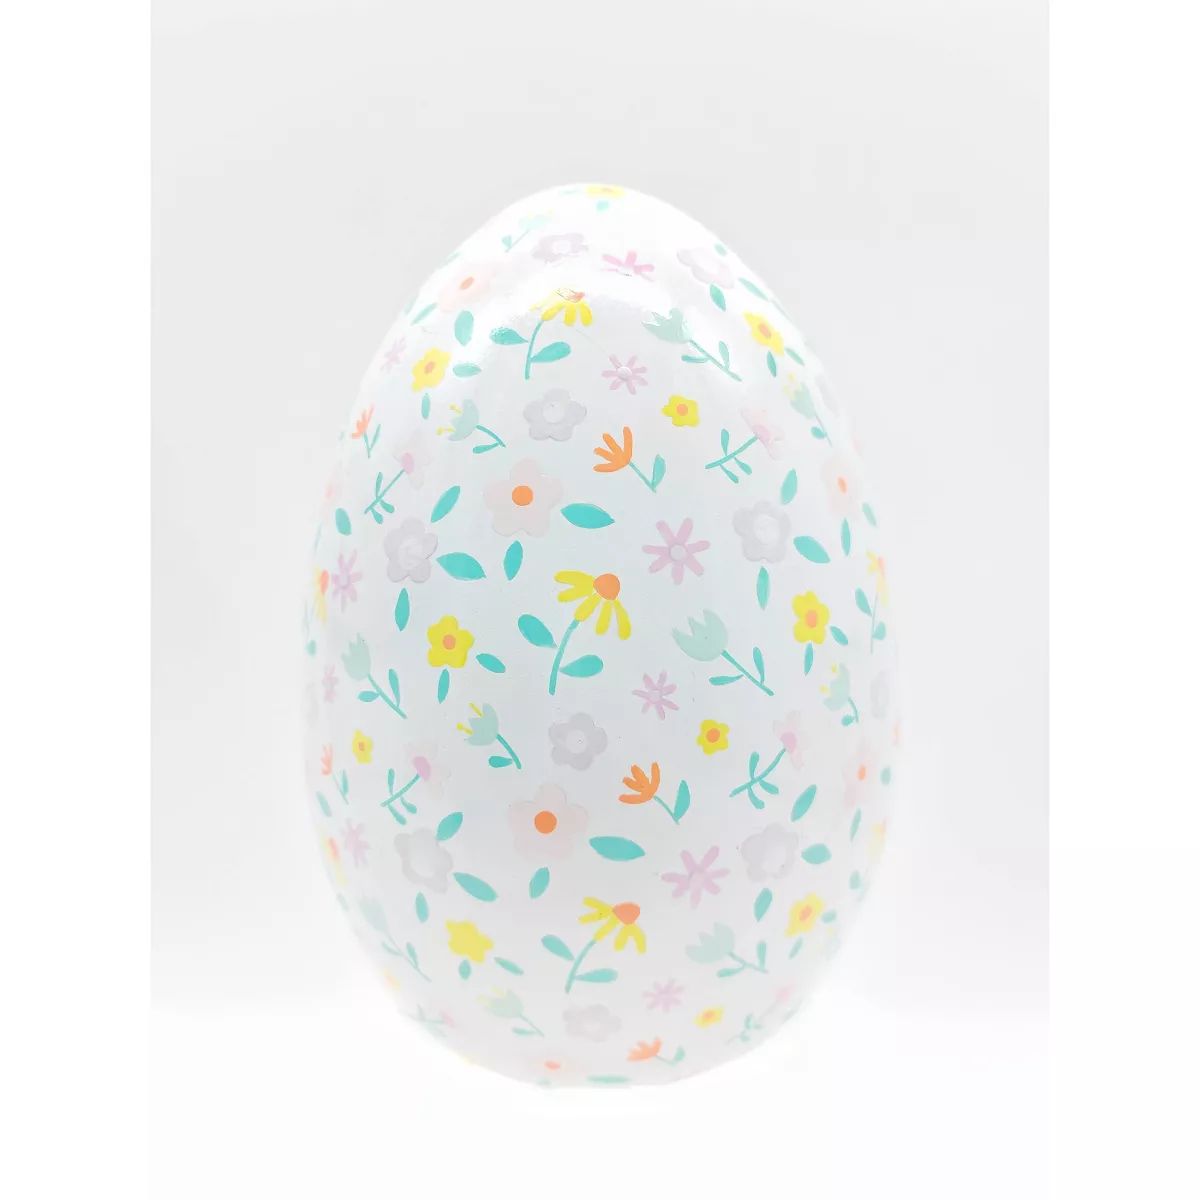 Large Decorative Printed Wood Easter Egg Floral Pattern - Spritz™ | Target